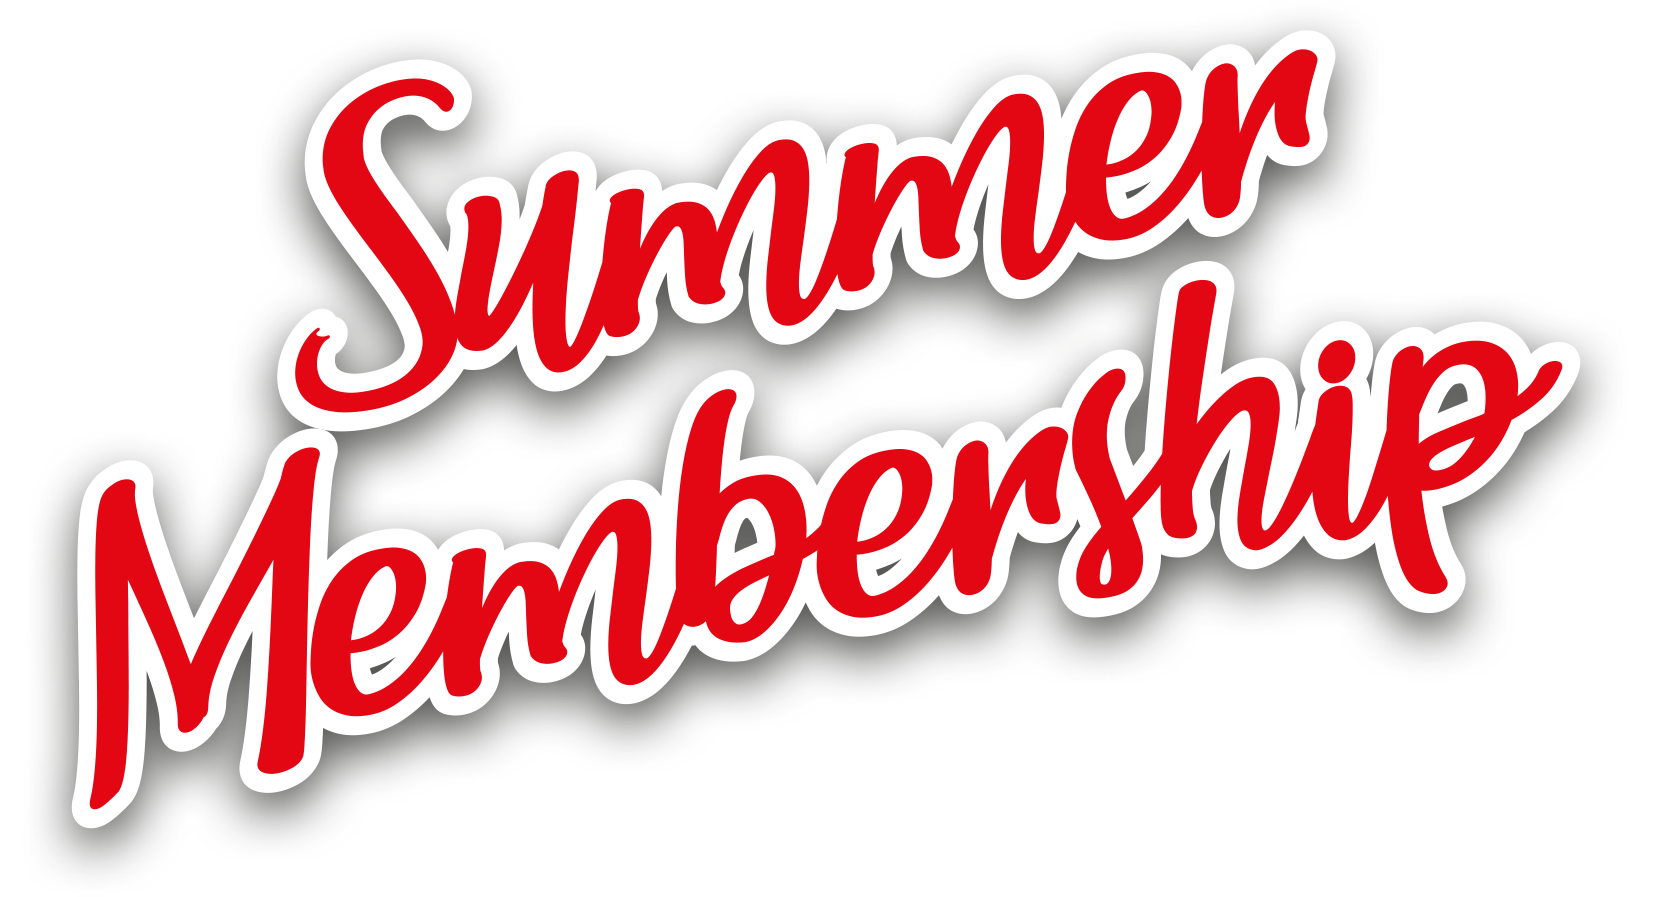 Summer Membership